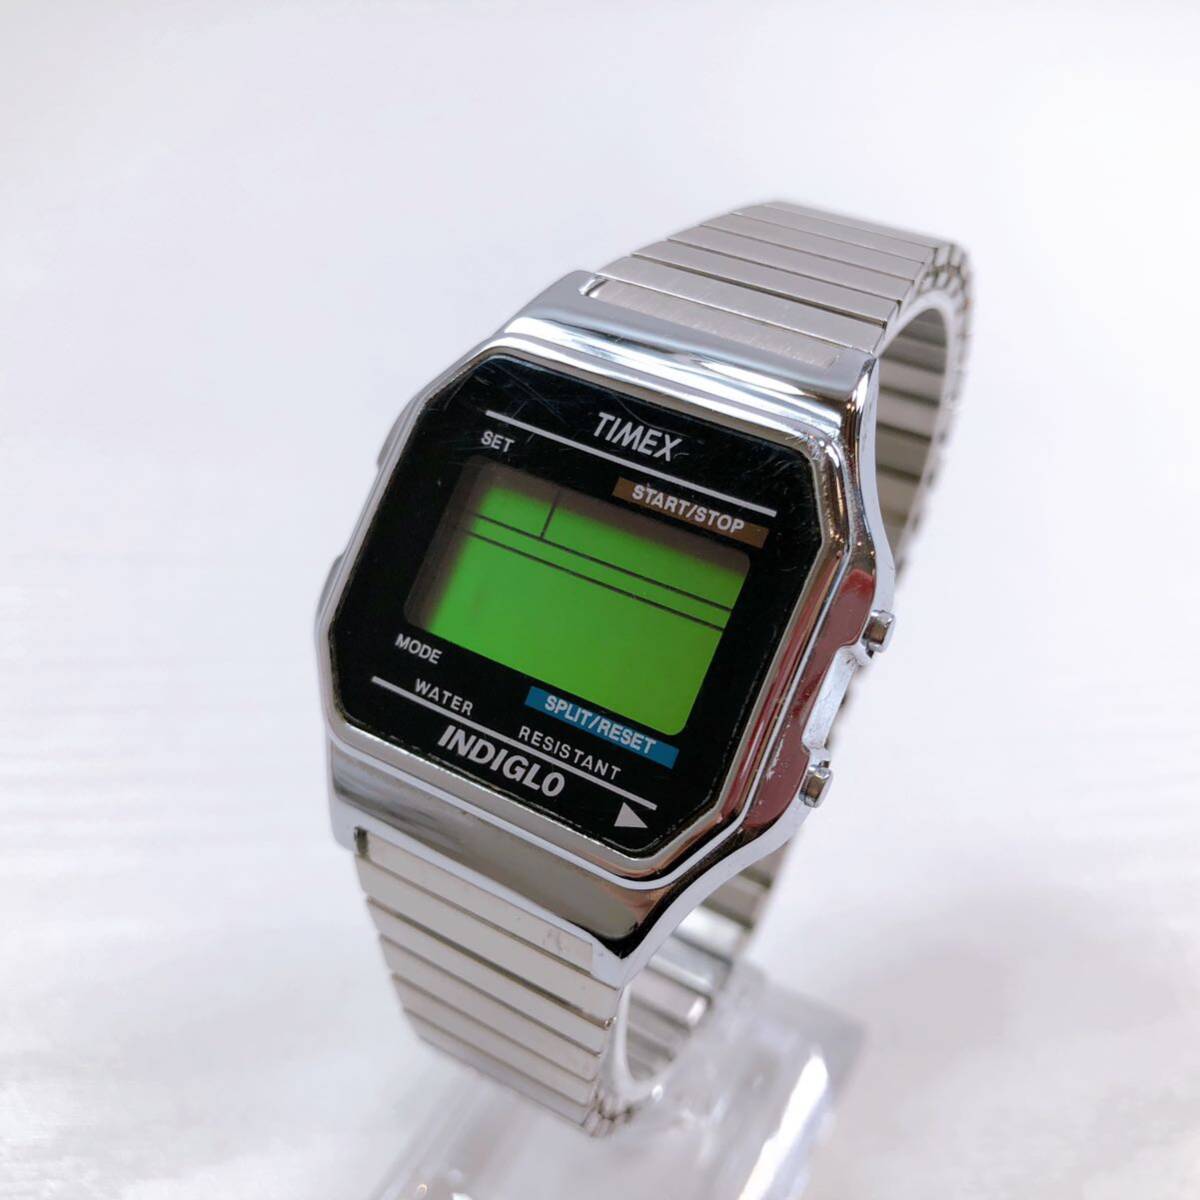 193【中古】TIMEX タイメックス CR2016 CELL クラシックデジタル INDIGLO シルバーカラー クォーツ メンズ腕時計 動作未確認 現状品の画像1